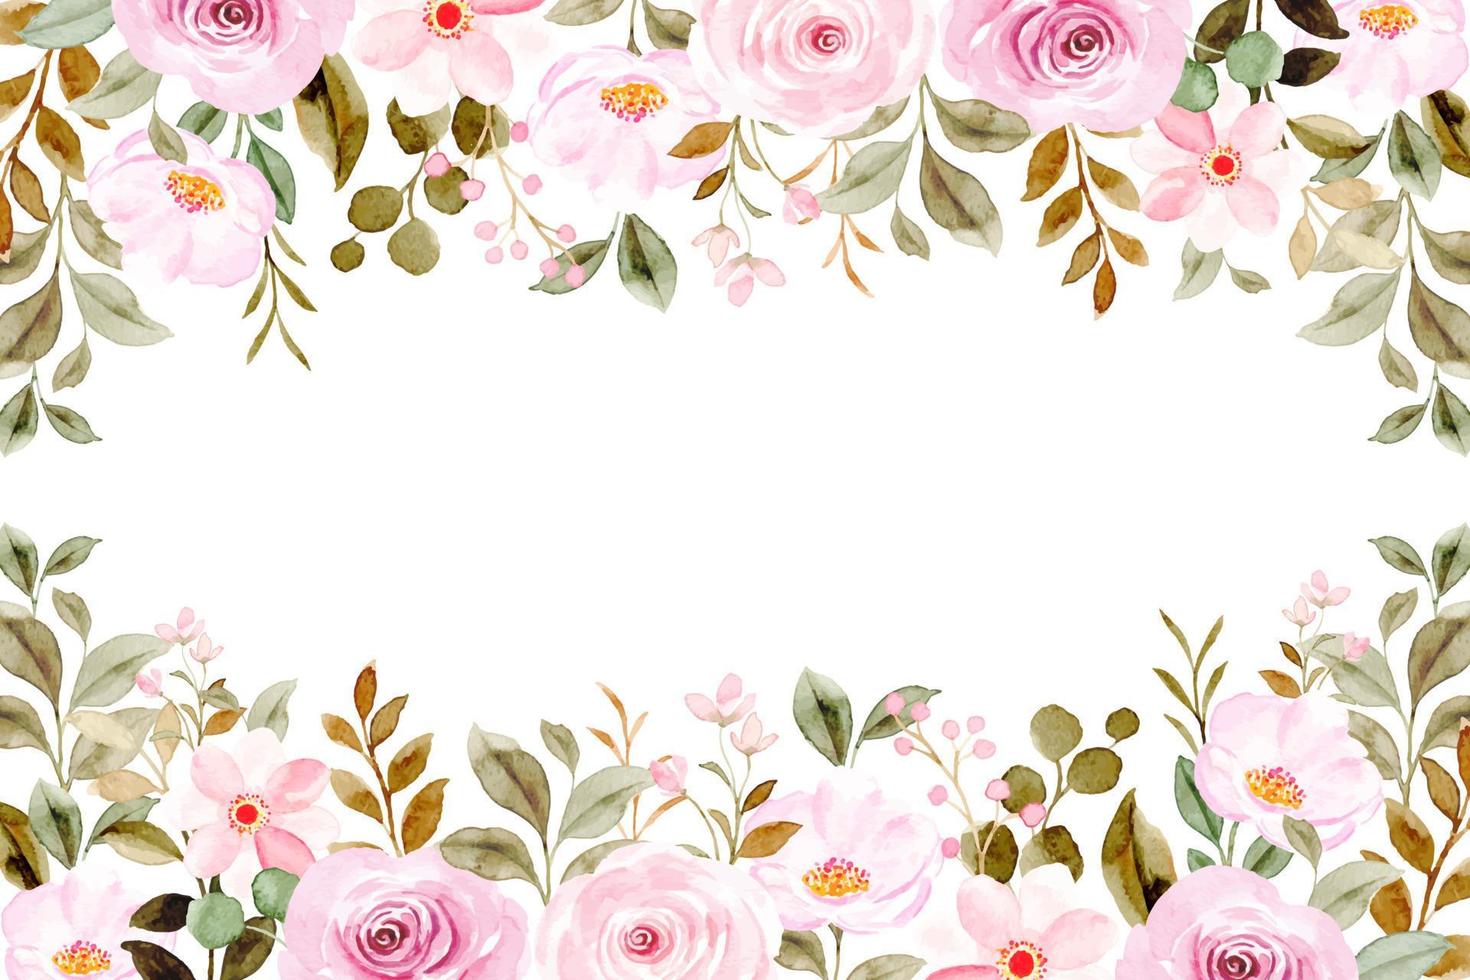 roze roos bloem grens met waterverf voor bruiloft, verjaardag, kaart, achtergrond, uitnodiging, behang, sticker, decoratie enz. vector